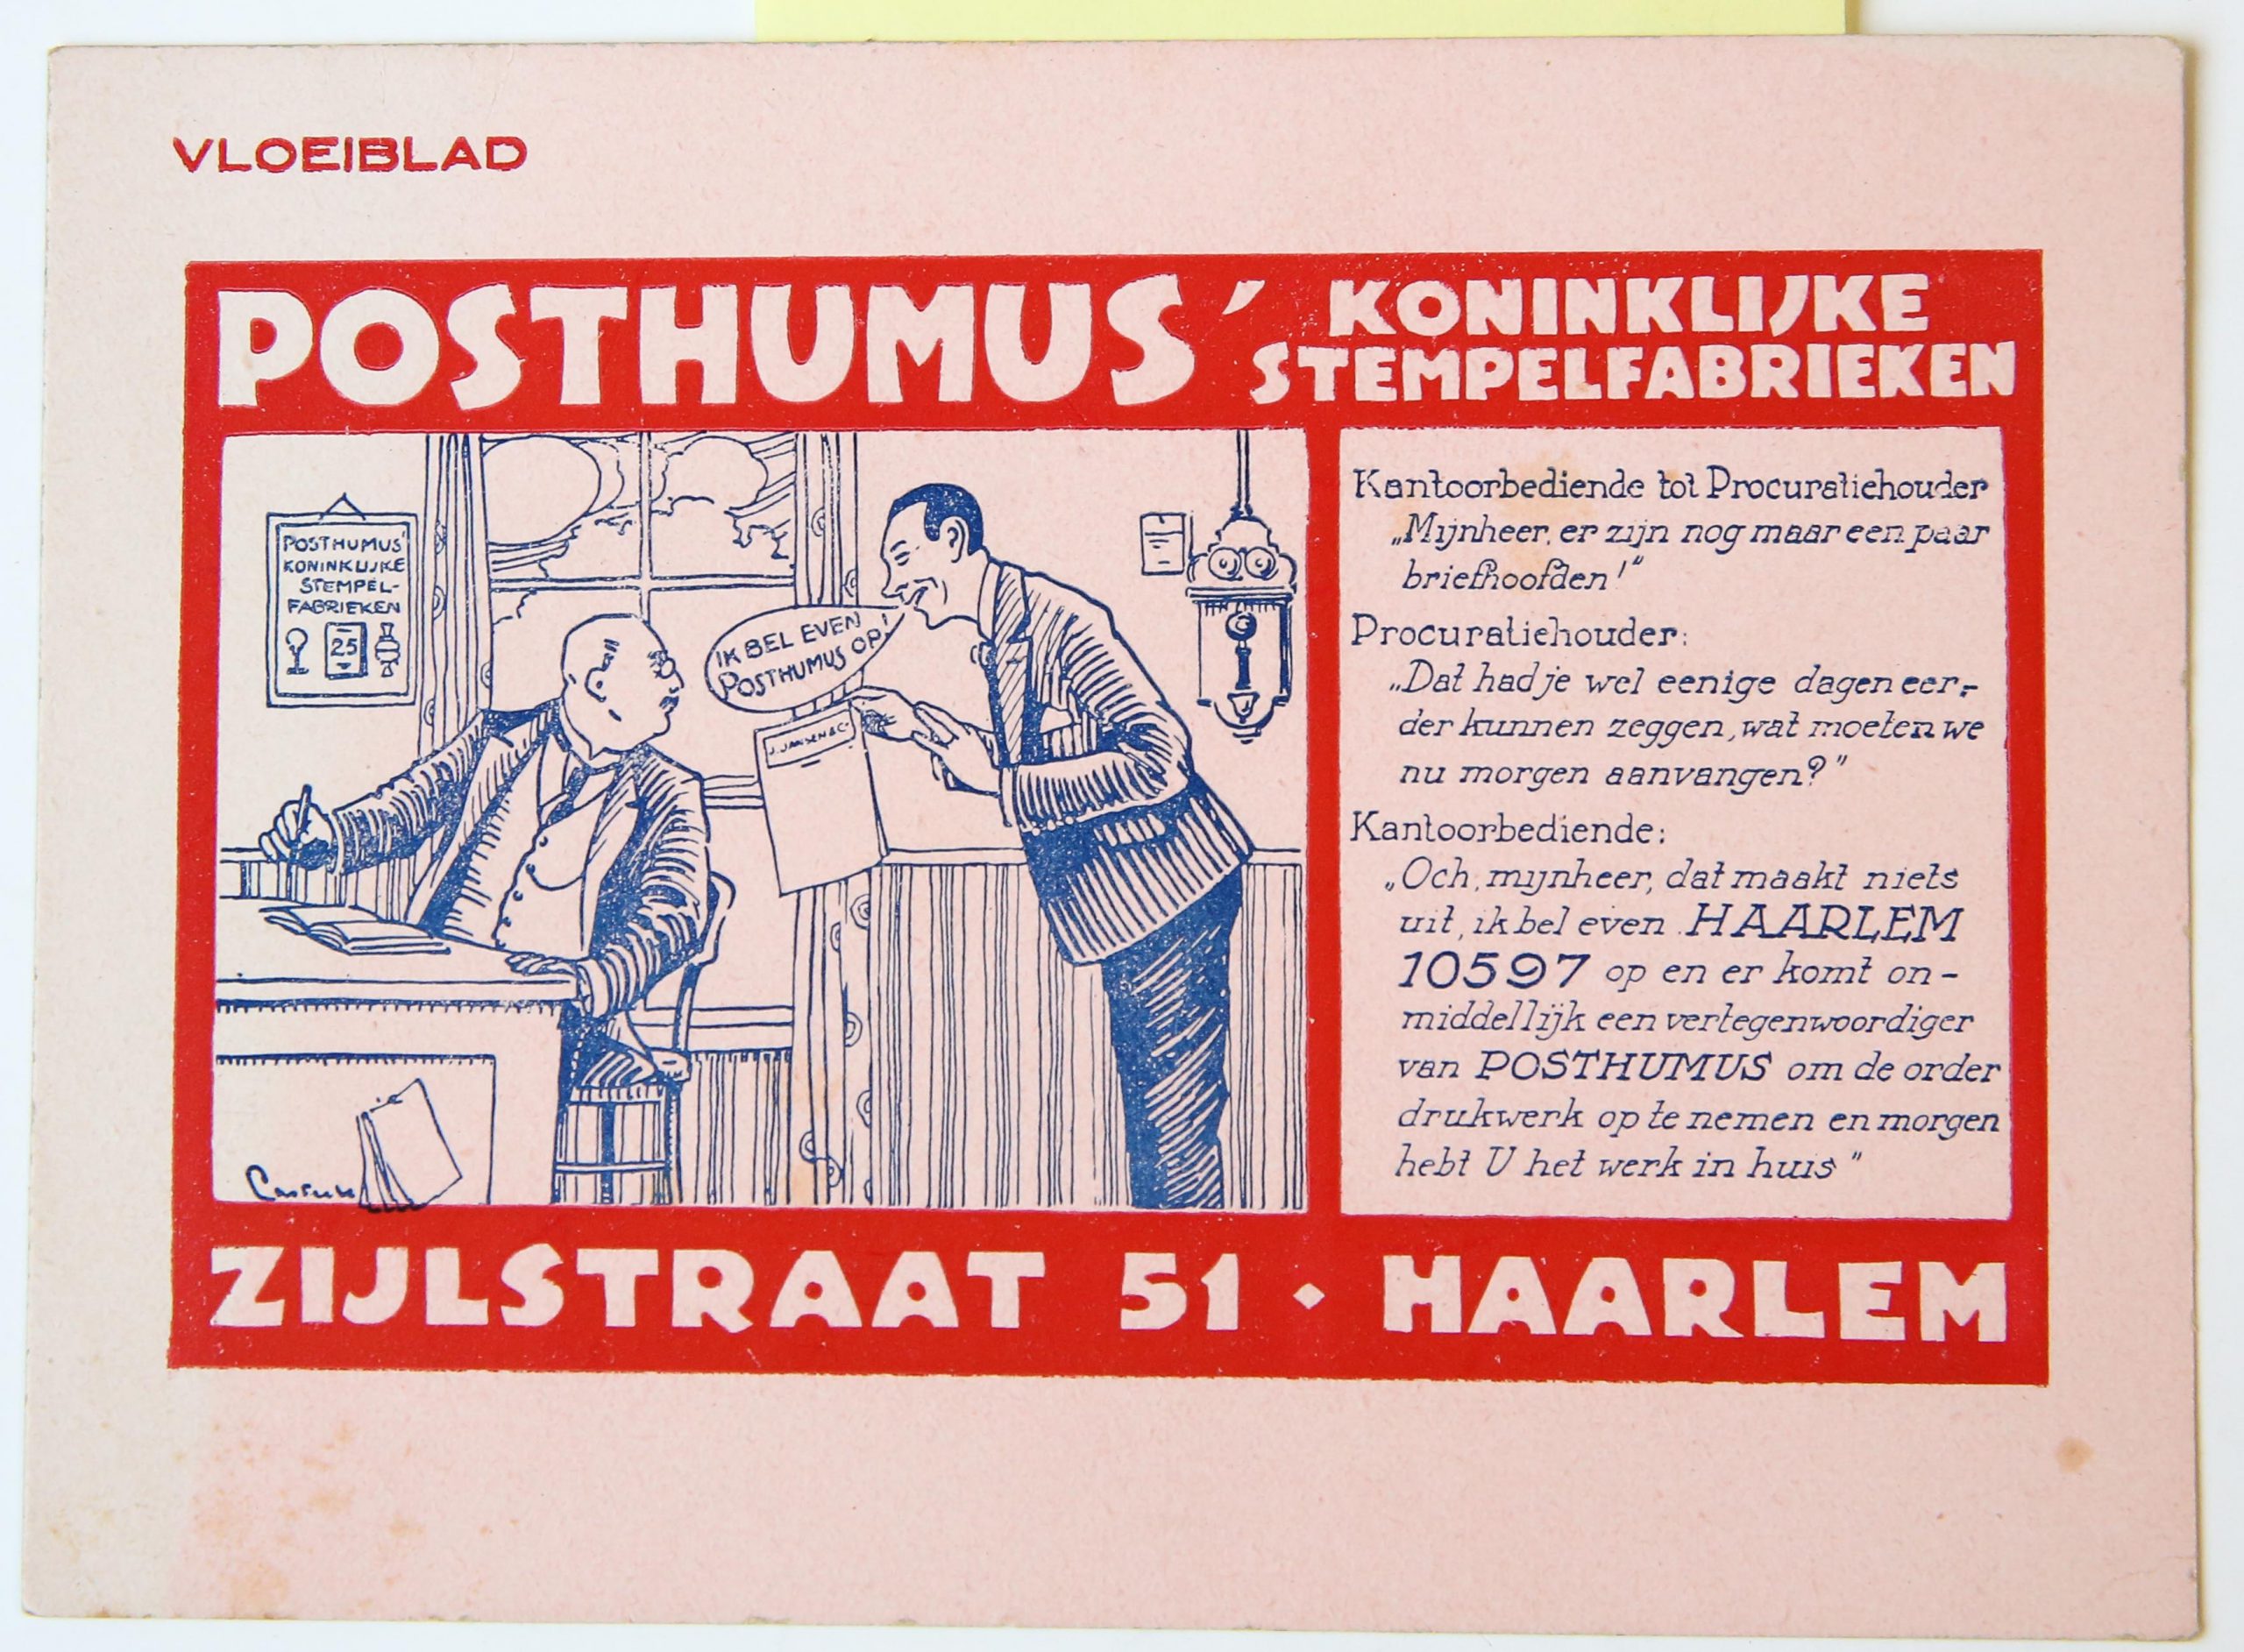 Vloeiblad Posthumus Koninklijke stempelfabrieken, Zijlstraat 51 Haarlem, with nice colours in pink and red. Beautiful design with image of two men that need new company paper soon.